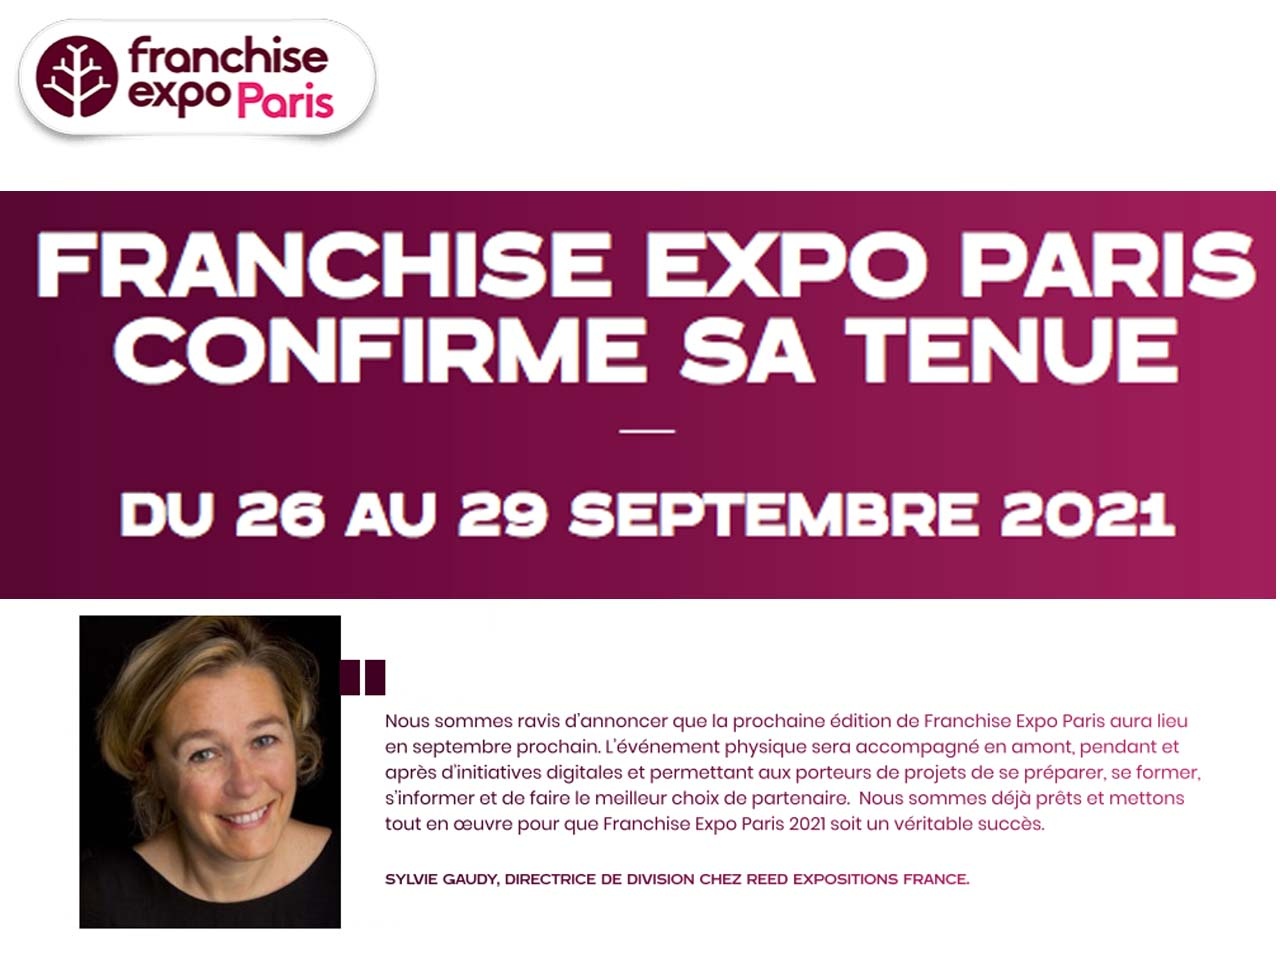 FRANCHISE EXPO PARIS  CONFIRME SA TENUE DU 26 AU 29 SEPTEMBRE 2021